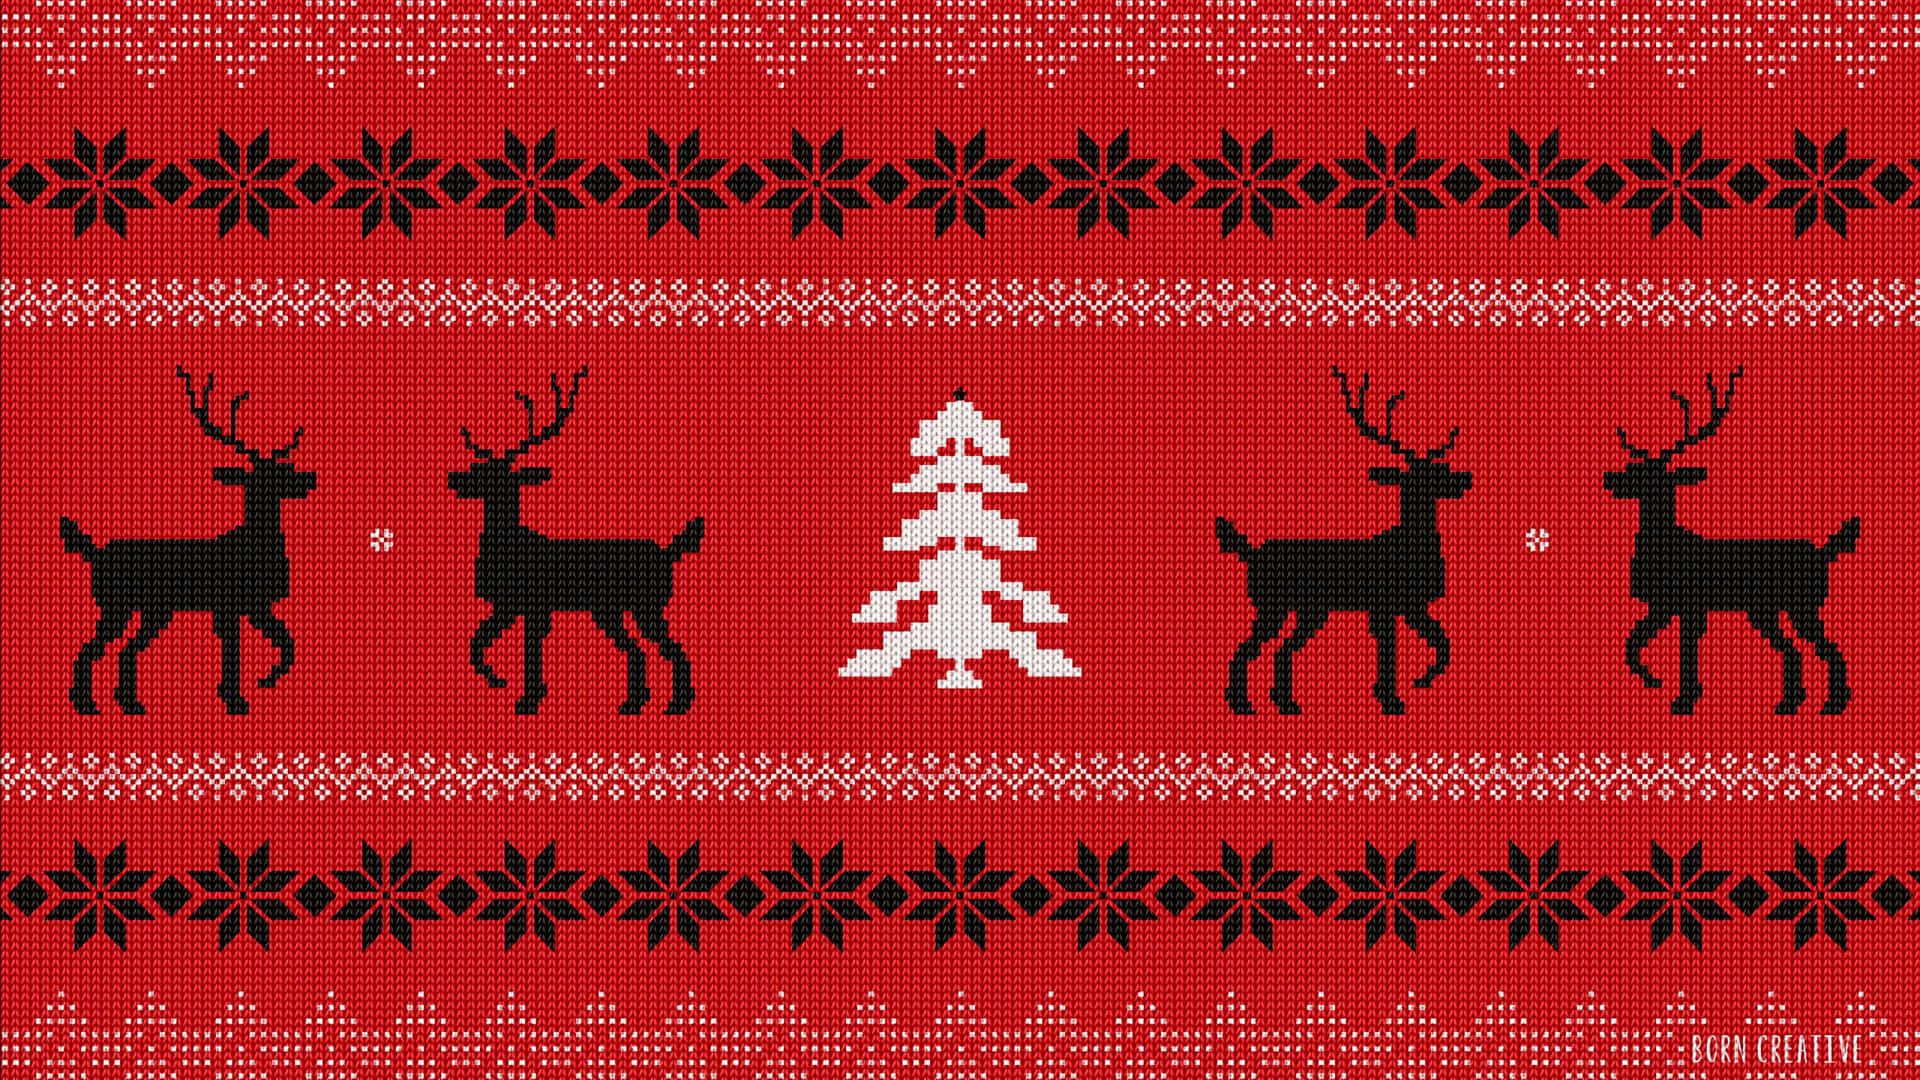 Tilføj et festligt touch denne jul sæson med dette smukke julemønster. Wallpaper